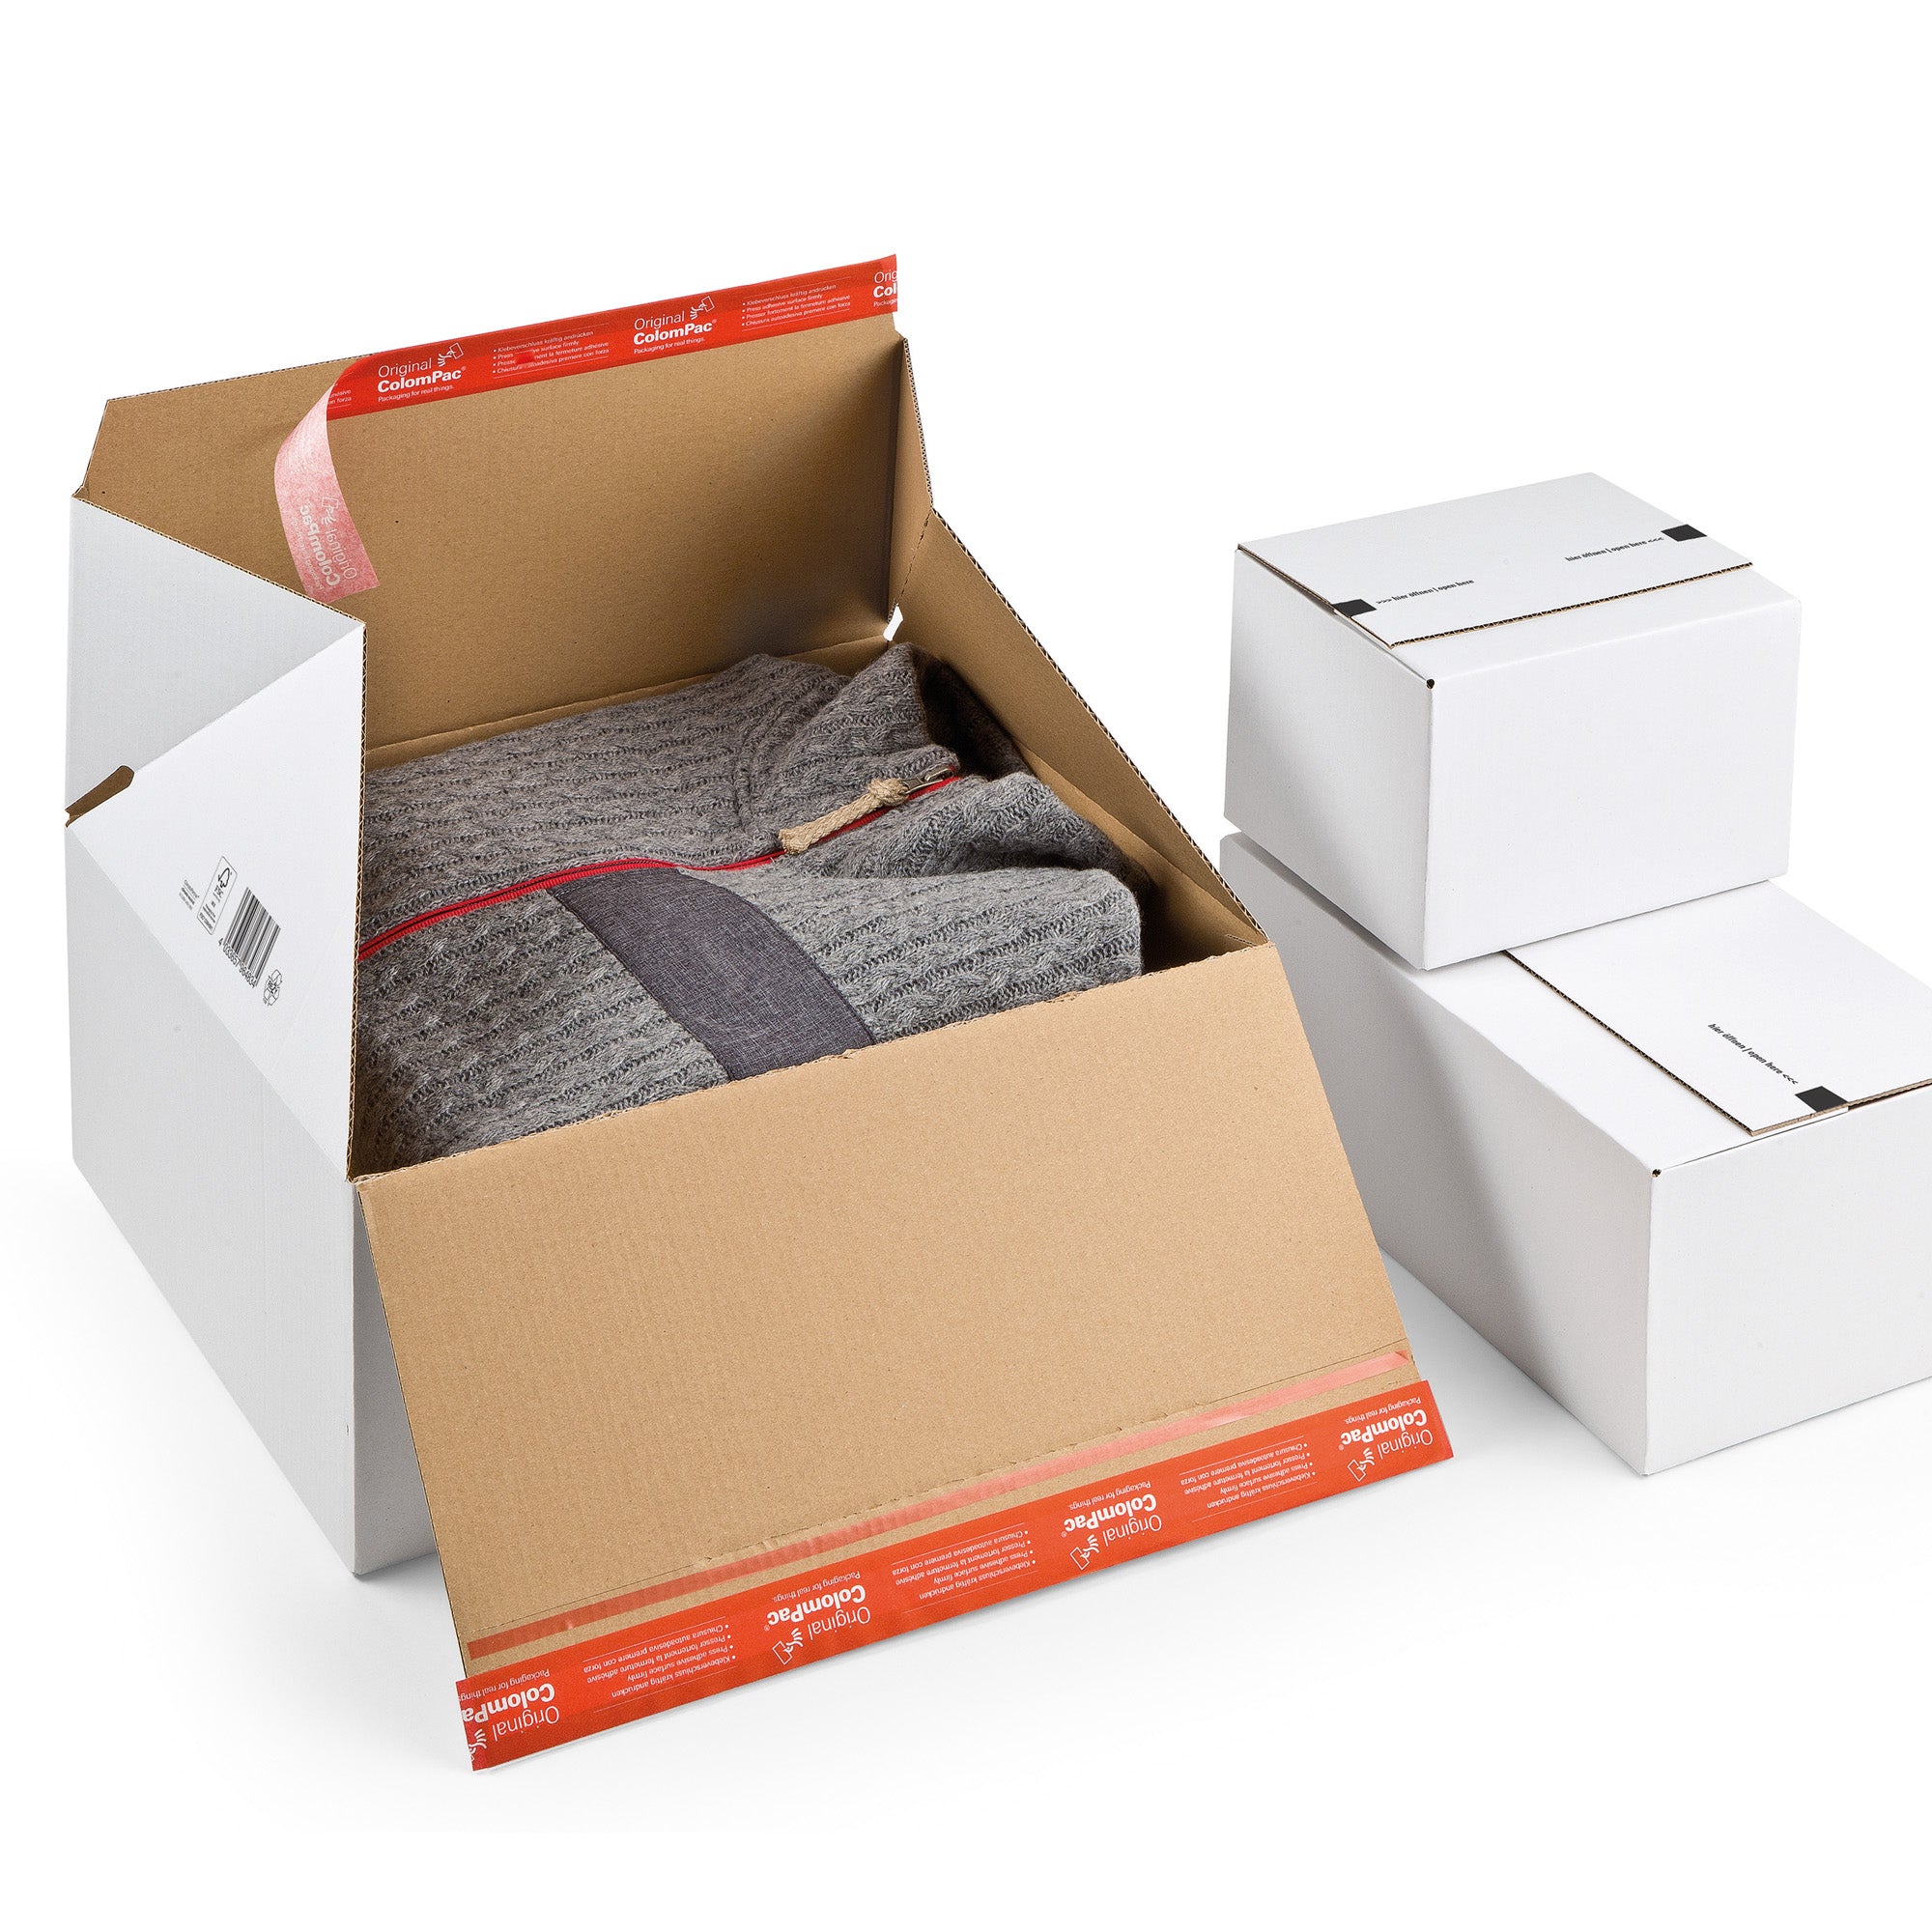 colompac-scatola-spedizione-e-commerce-38-9x32-4x32cm-bianco